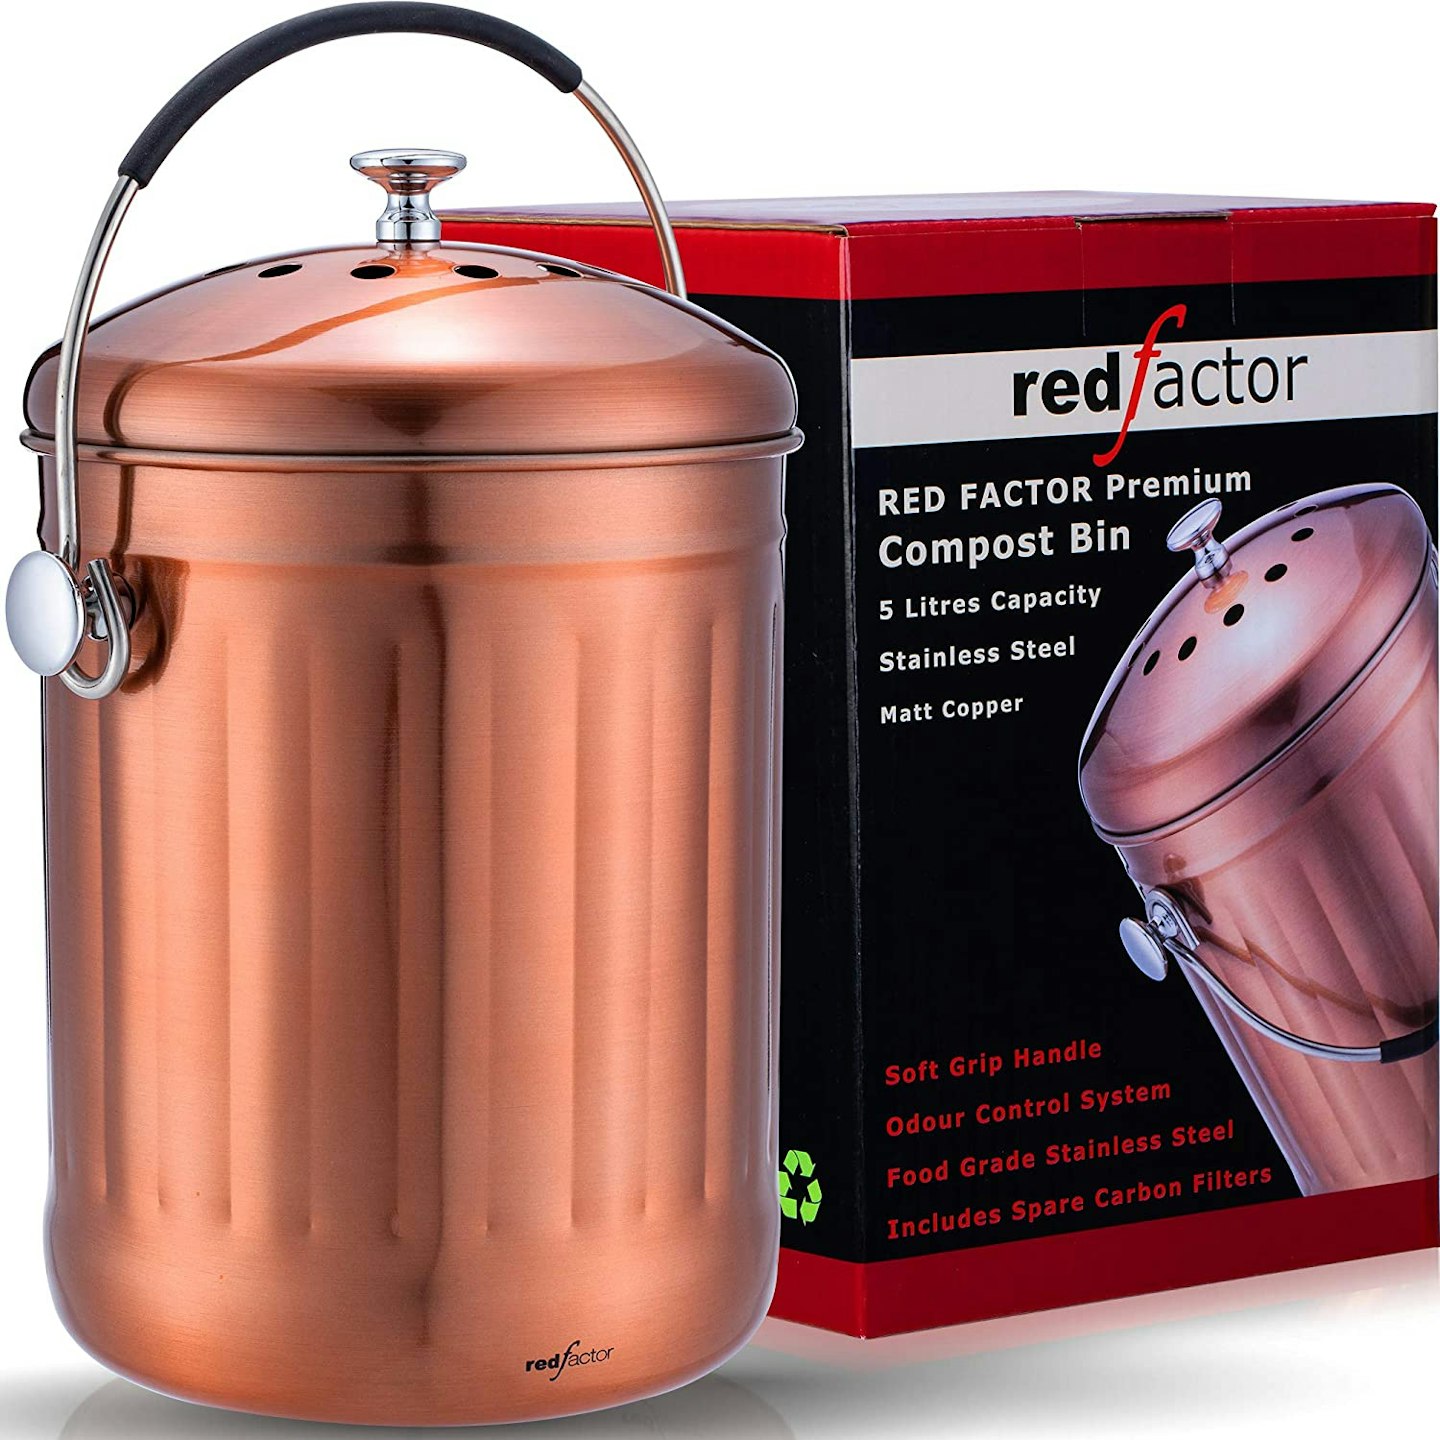 RED FACTOR Premium Compost Bin for Kitchen Worktop